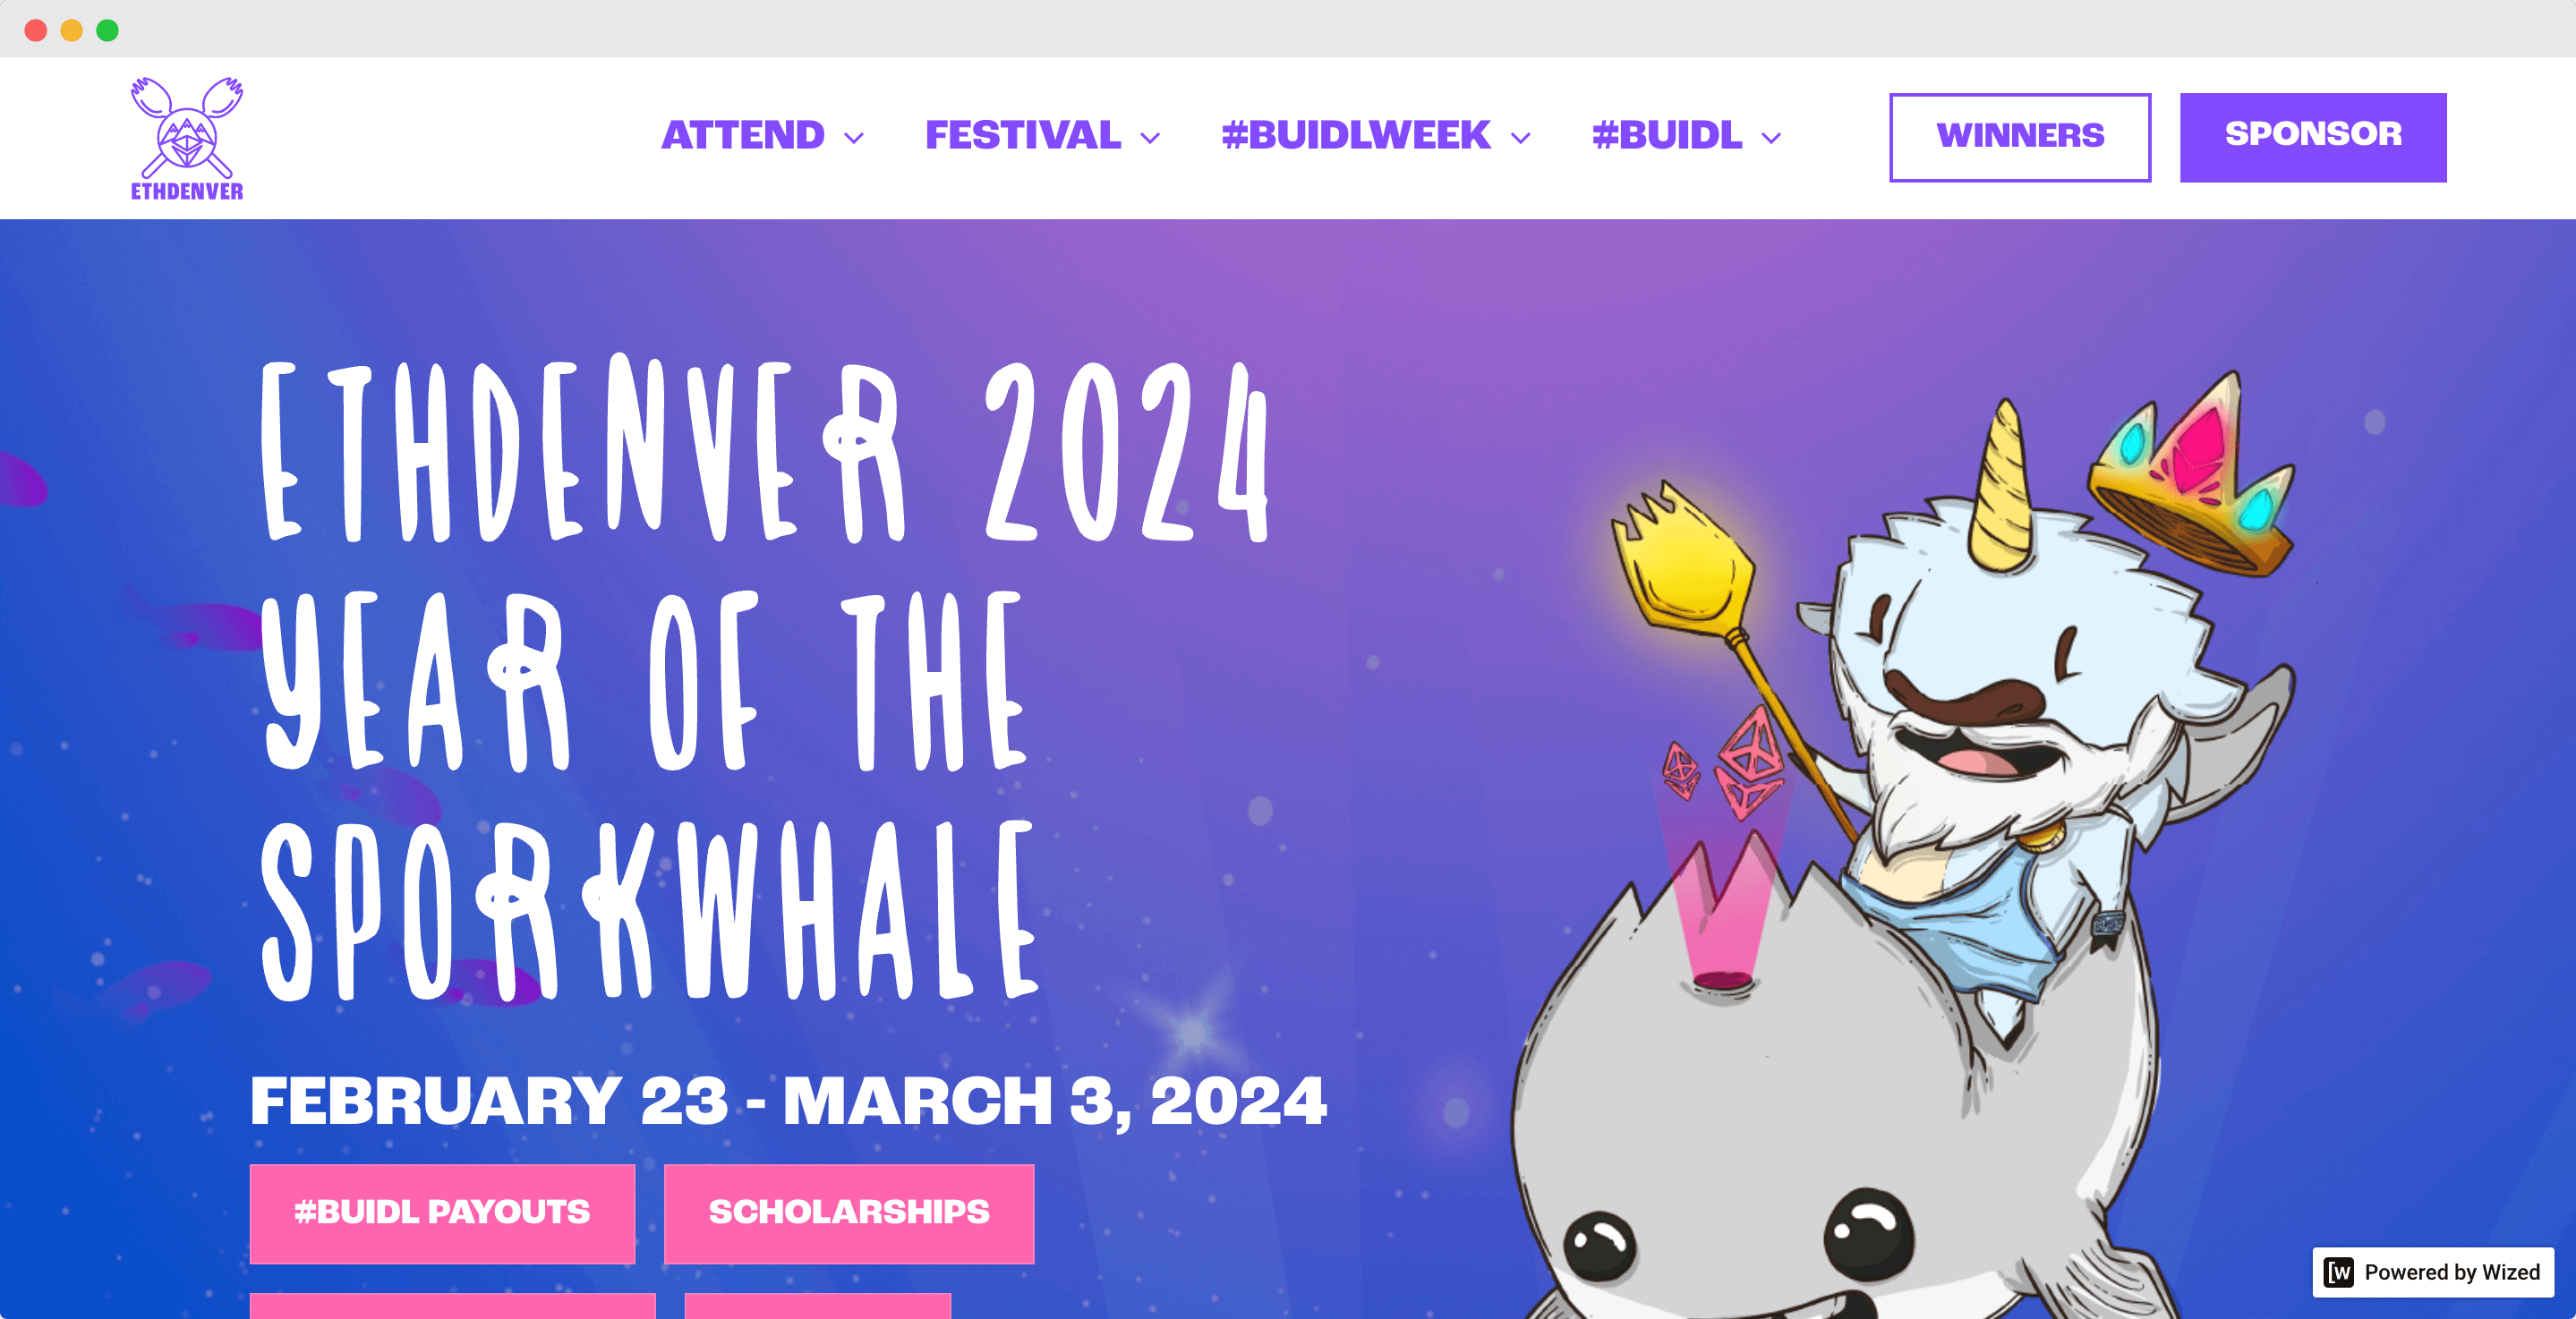 ETHDenver Innovation Festival